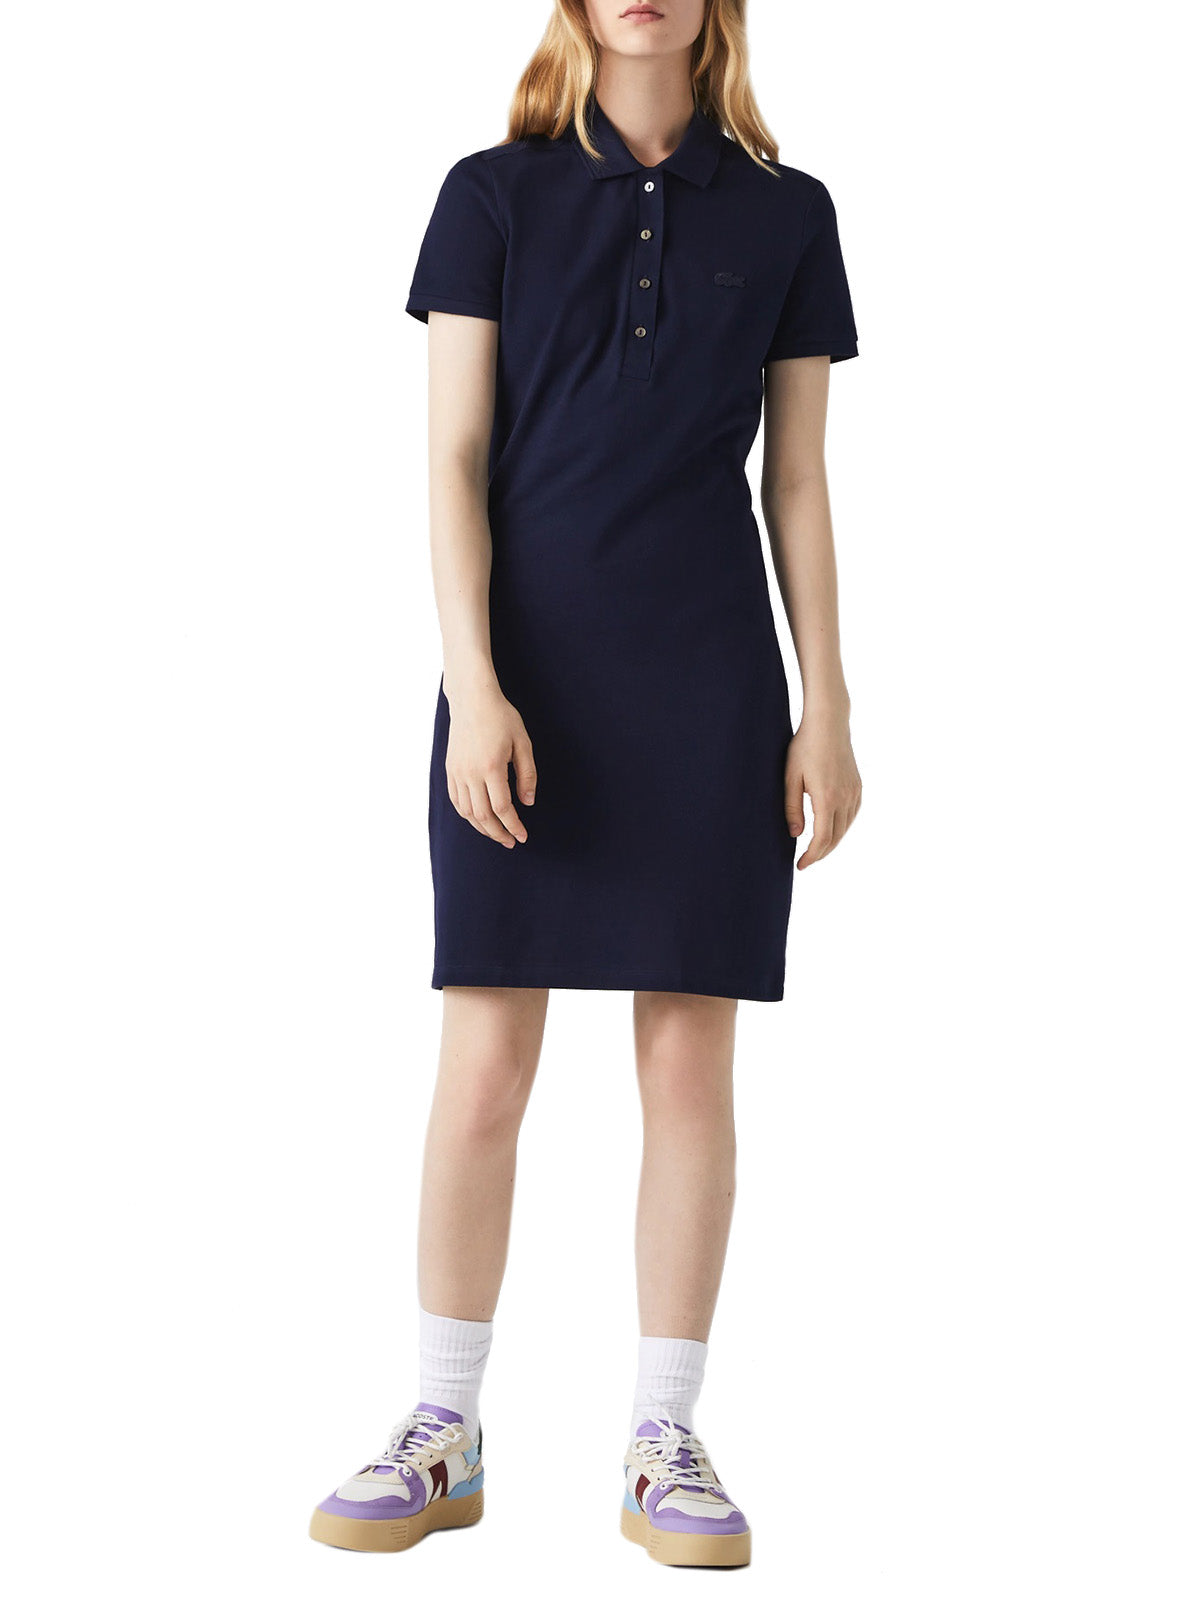 Vestiti casual Donna Lacoste - Slim Fit Piqué S/S Polo Dress - Blu